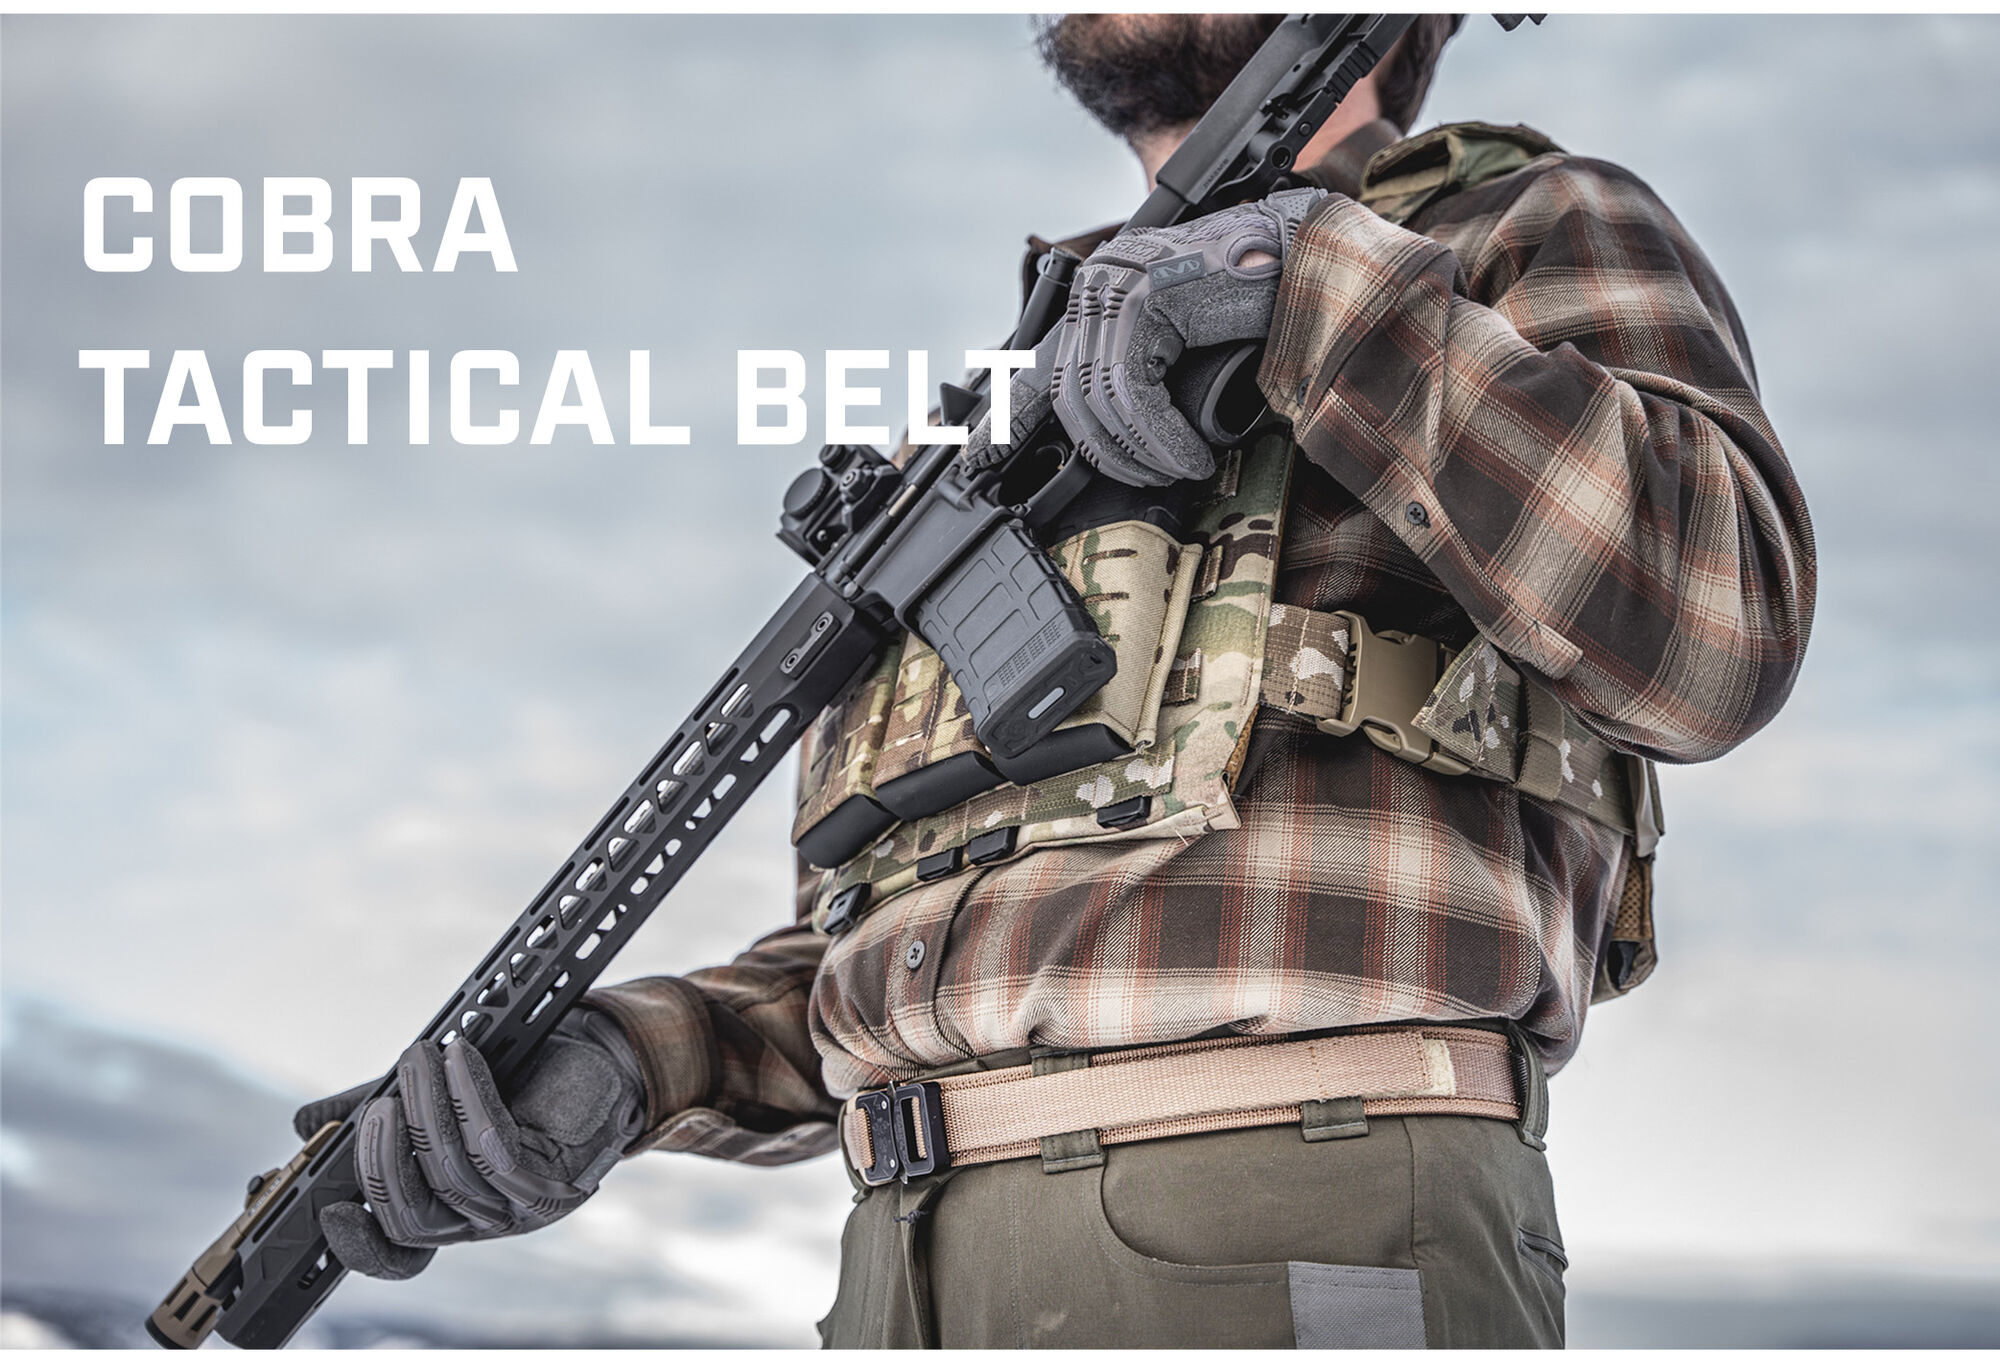 Cobra Tactical Belt